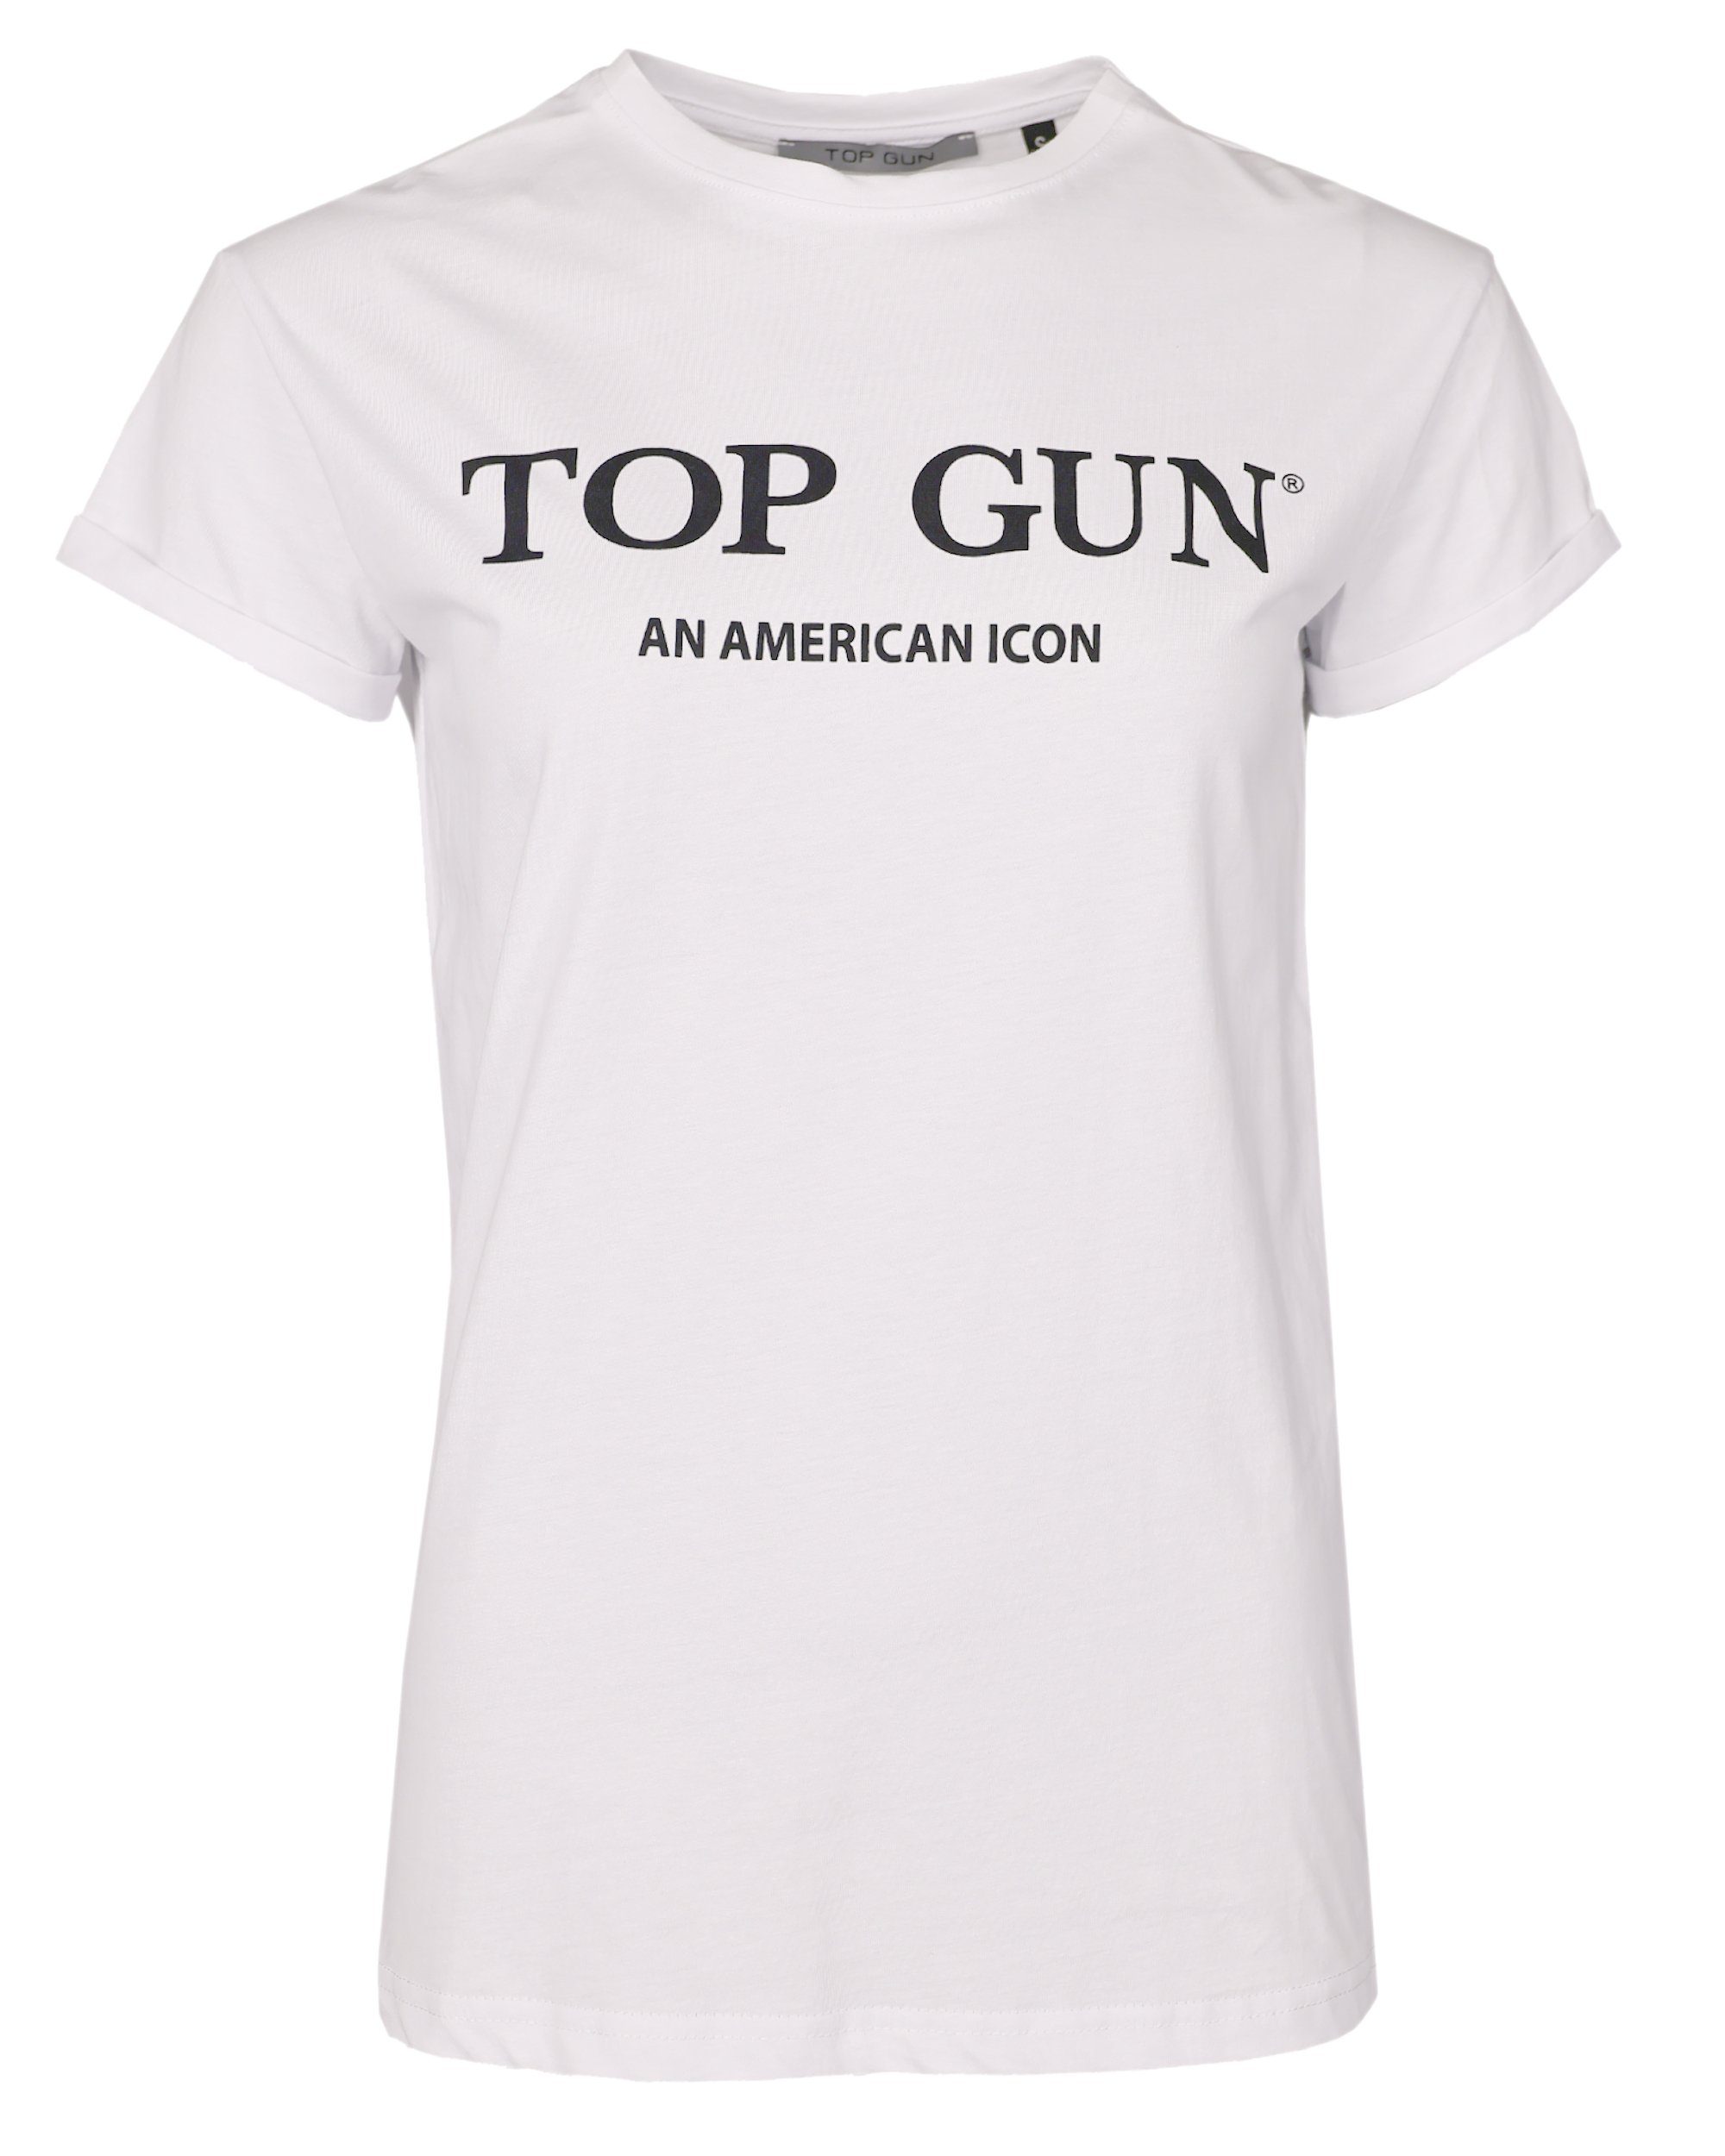 TG20214001 GUN TOP T-Shirt